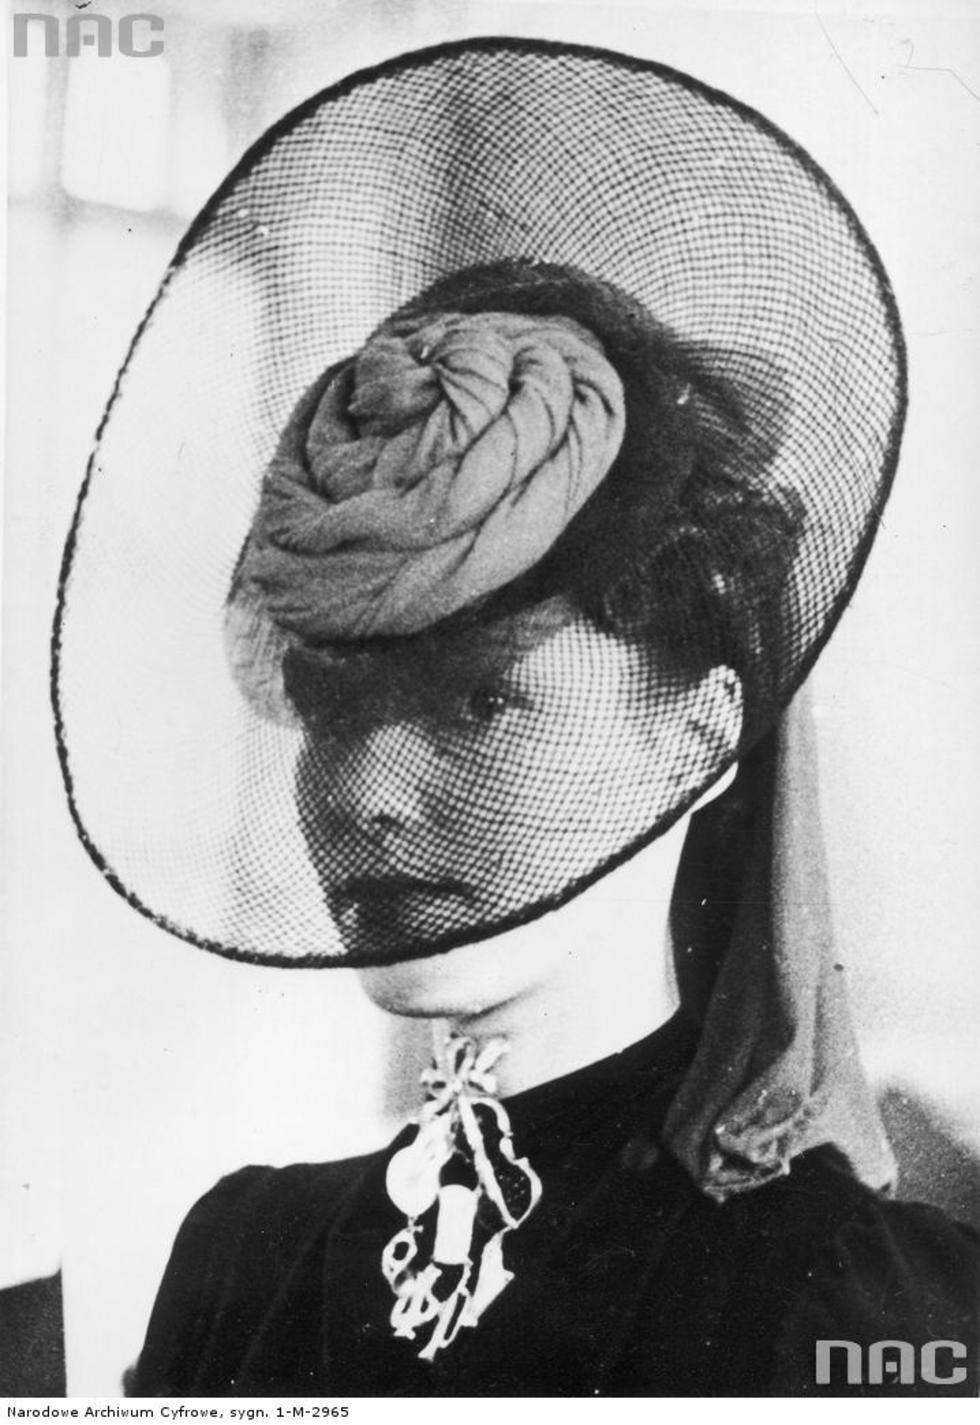  Moda francuska. Modelka prezentuje oryginalny kapelusz. 1939 r.

